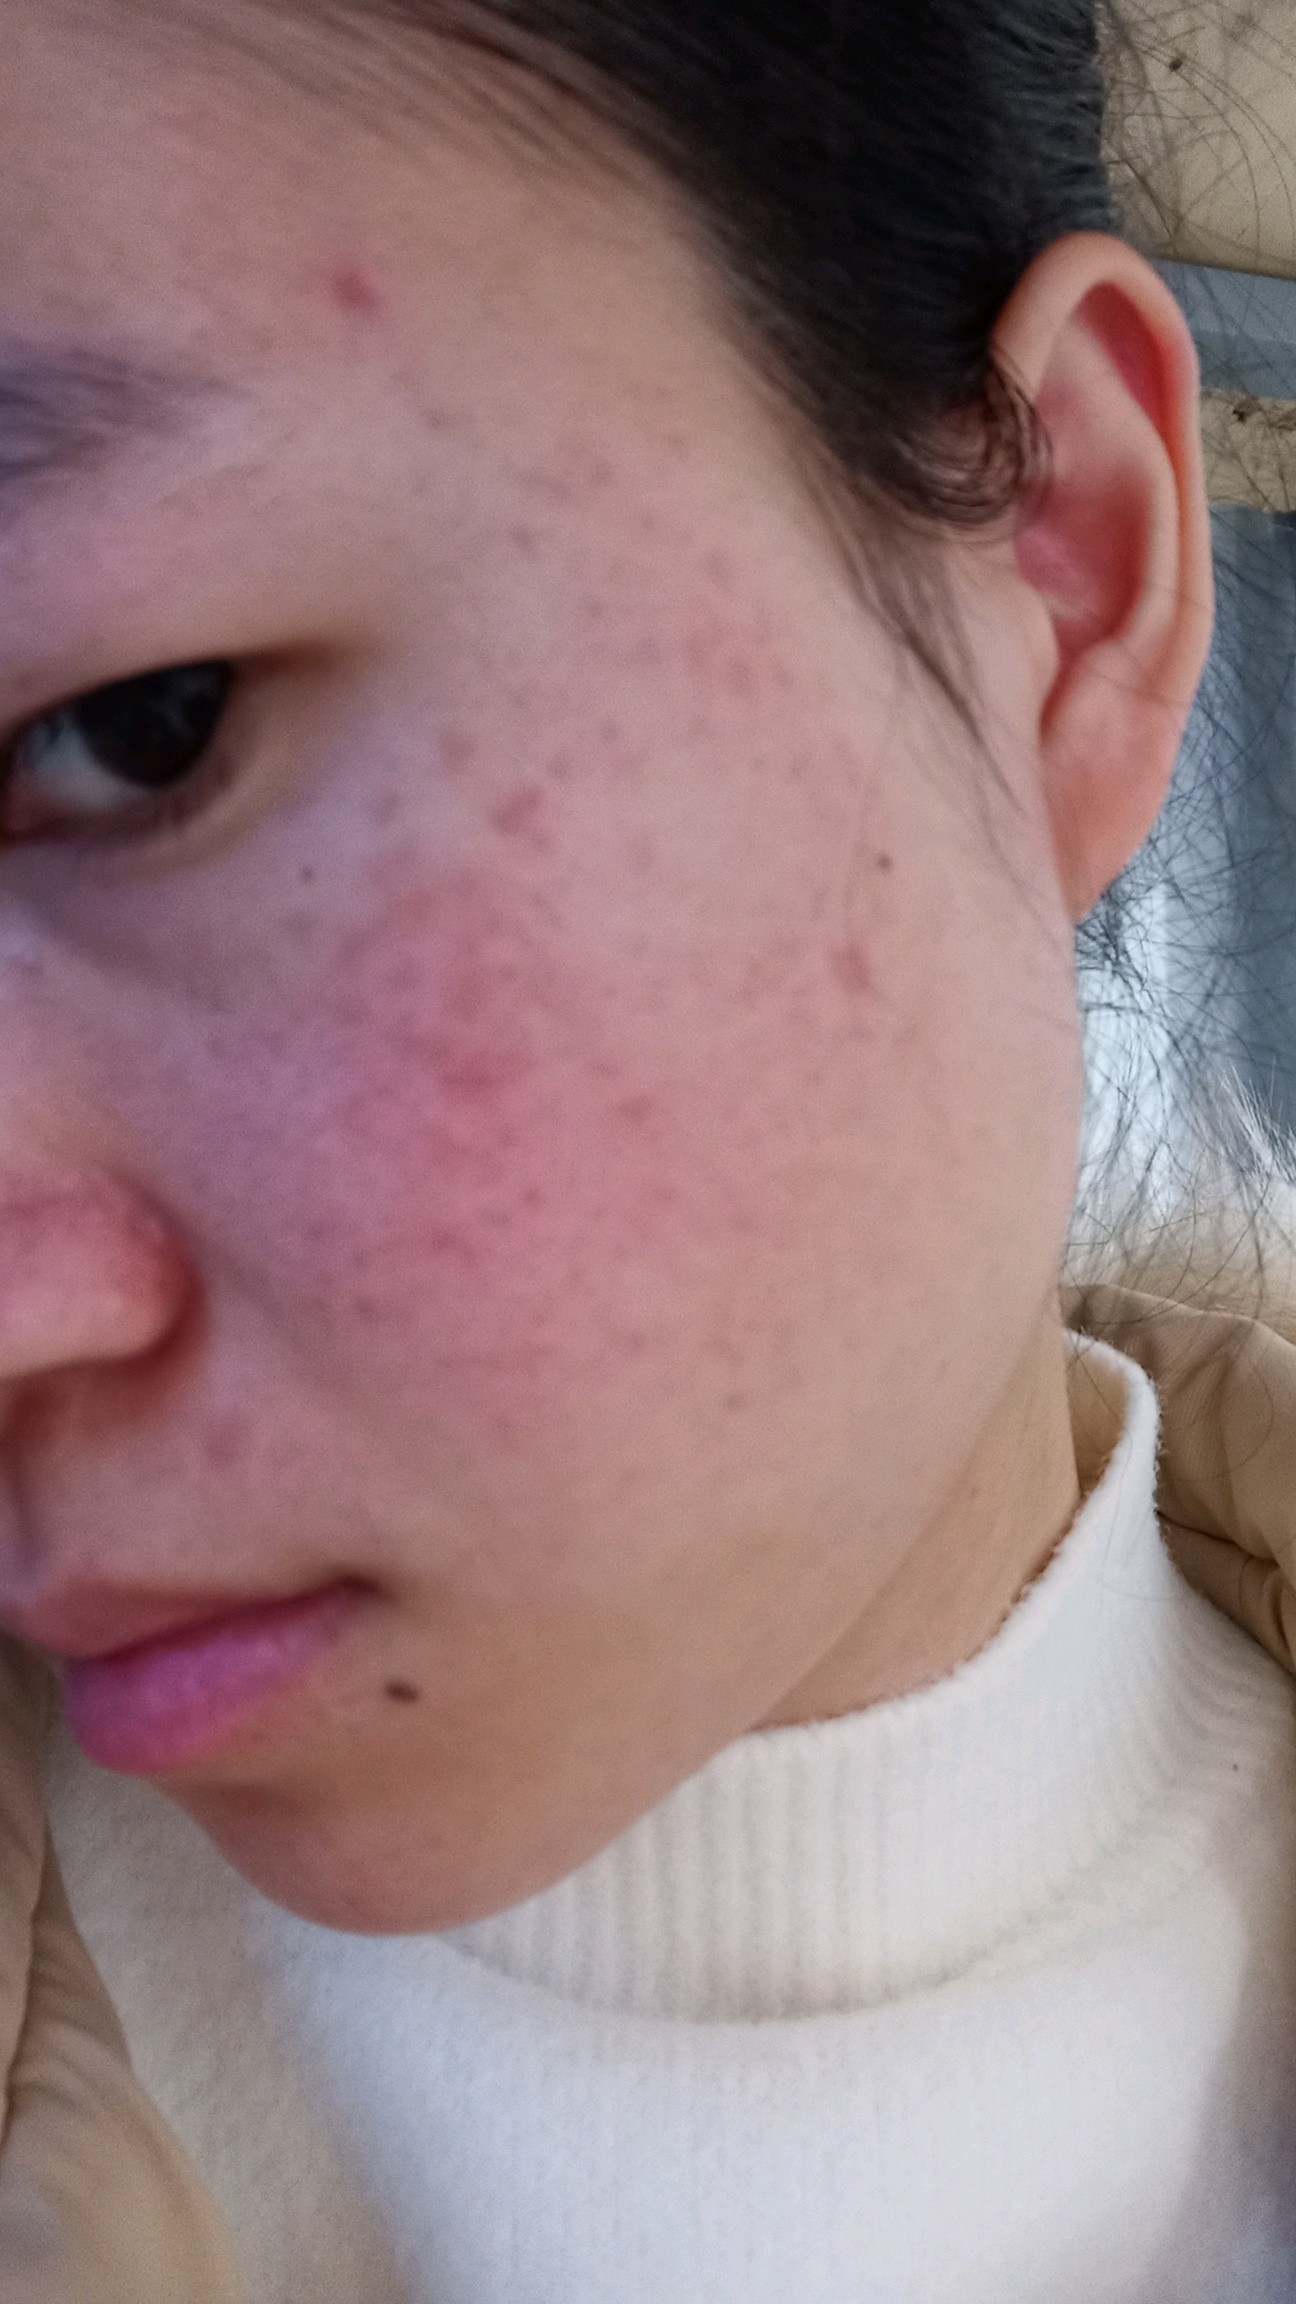 痘印两年了,脸颊有泛红,祛痘印做什么项目效果较好?